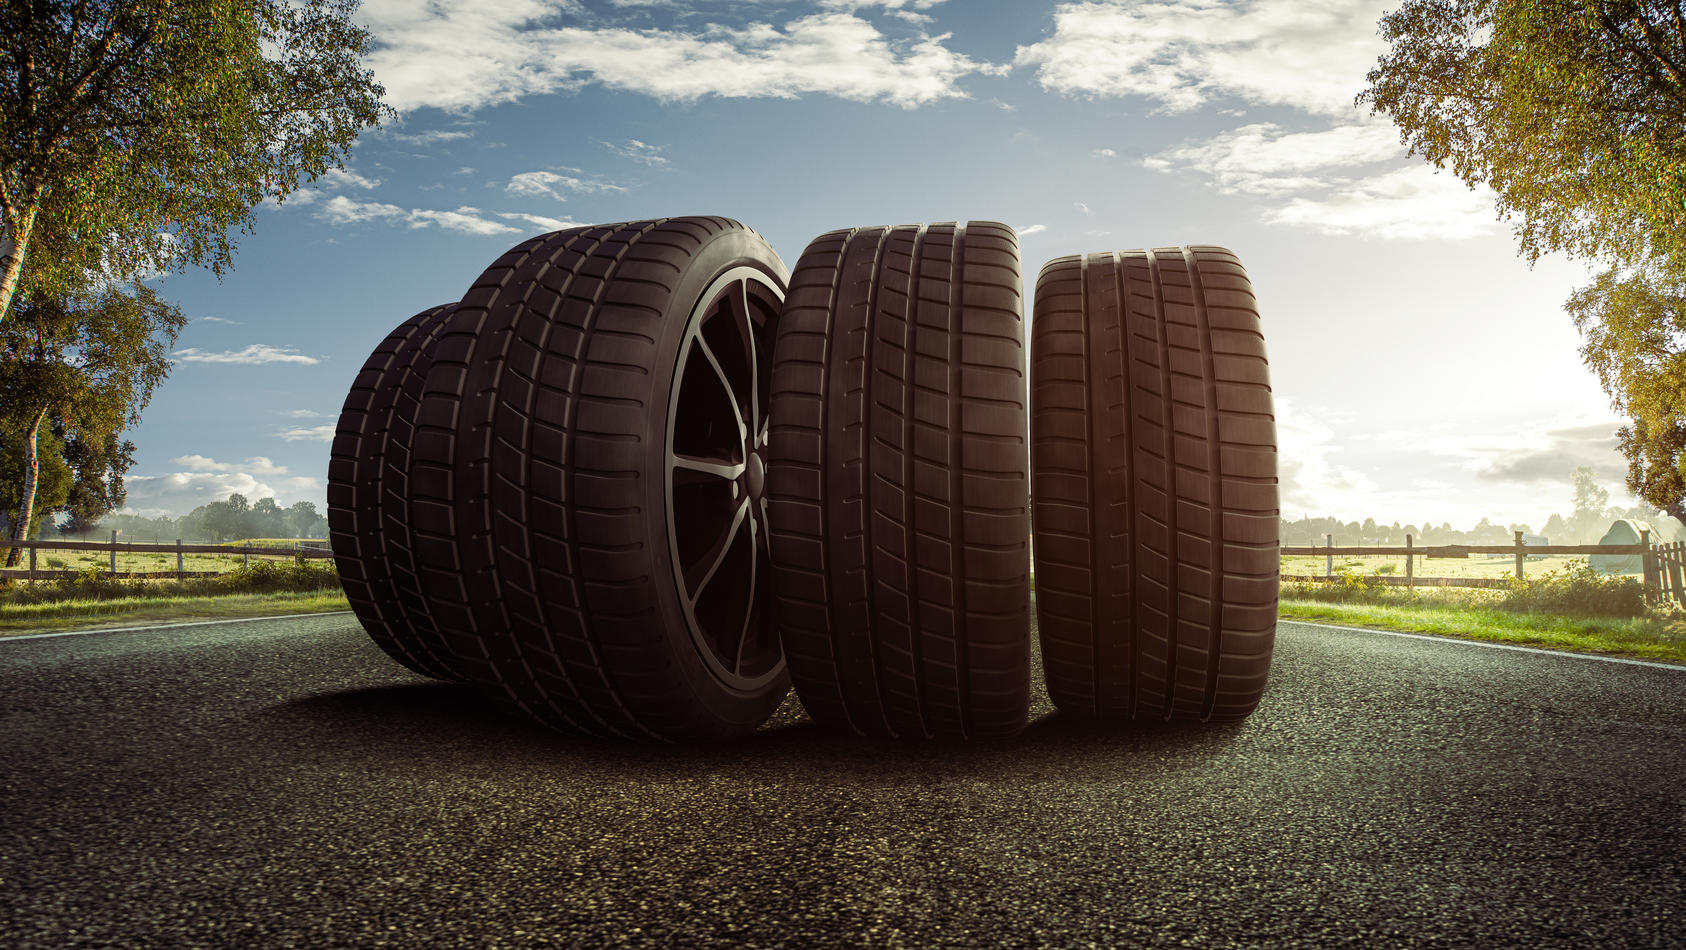 empfiehlt ADAC der Diese im Test: Sommerreifen Reifen